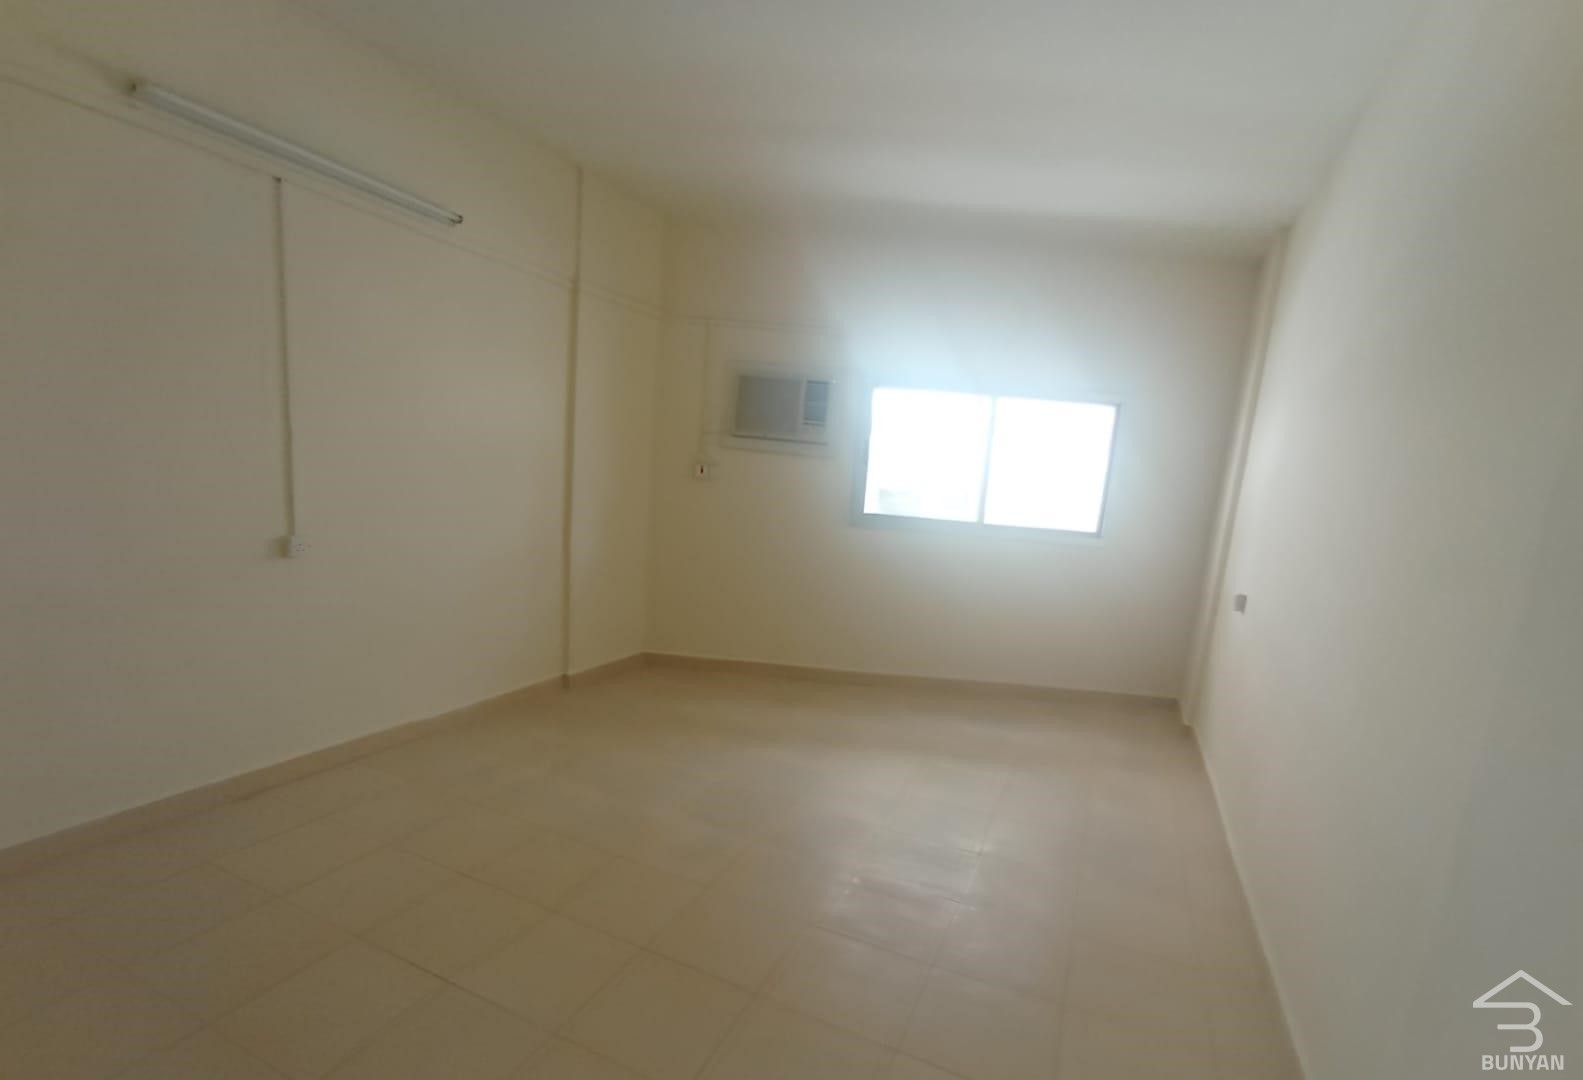 2 Bedroom Unfurnished Flat in Bin Mahmoud